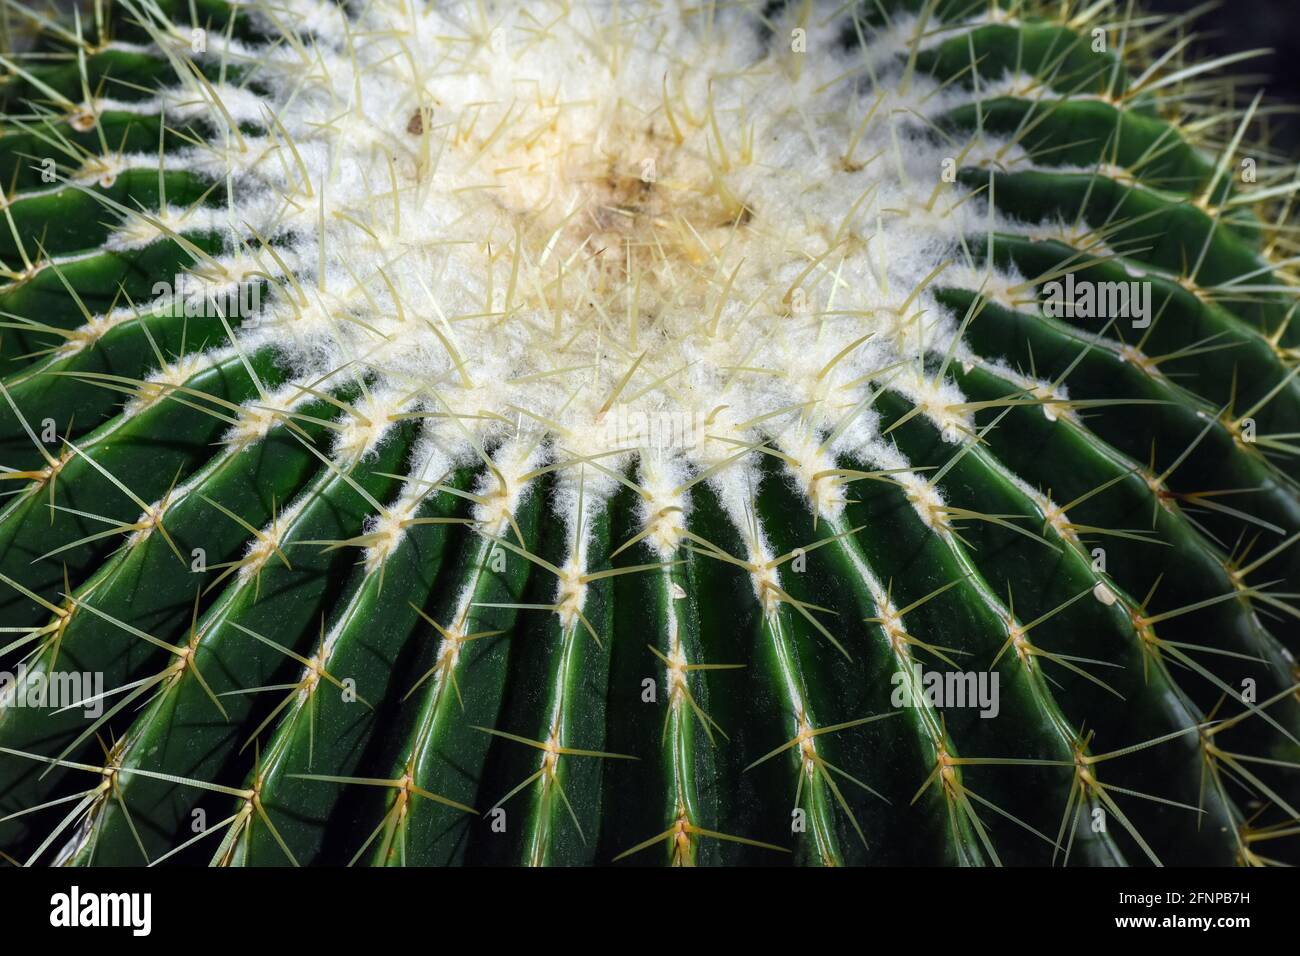 cactus needles Stock Photo